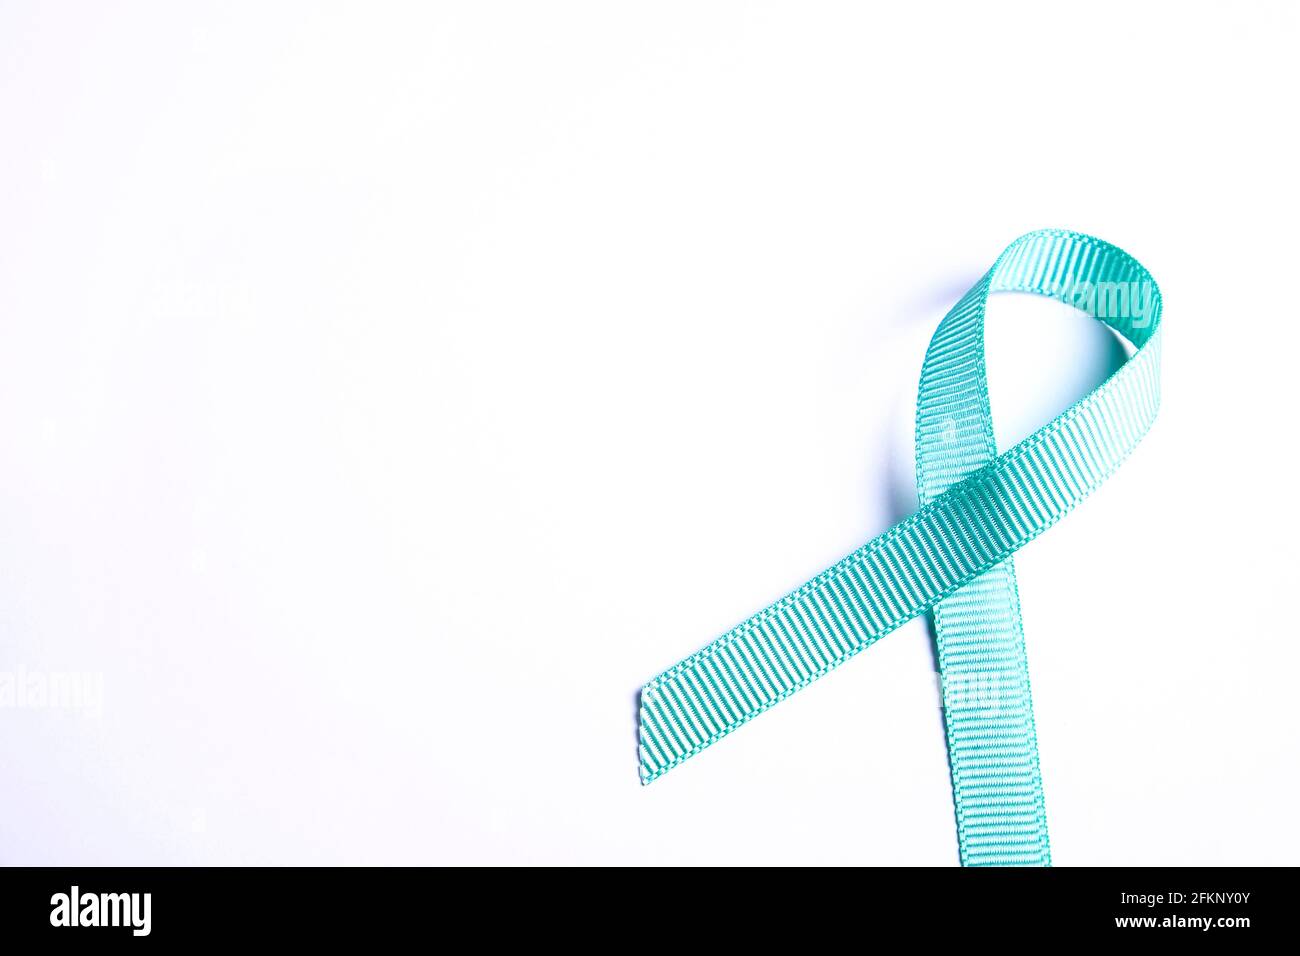 Nastro di consapevolezza blu - simbolo per combattere il cancro della prostata, sostenere i sopravvissuti e la consapevolezza dell'abuso di bambini. Isolato su sfondo bianco, spazio di copia Foto Stock